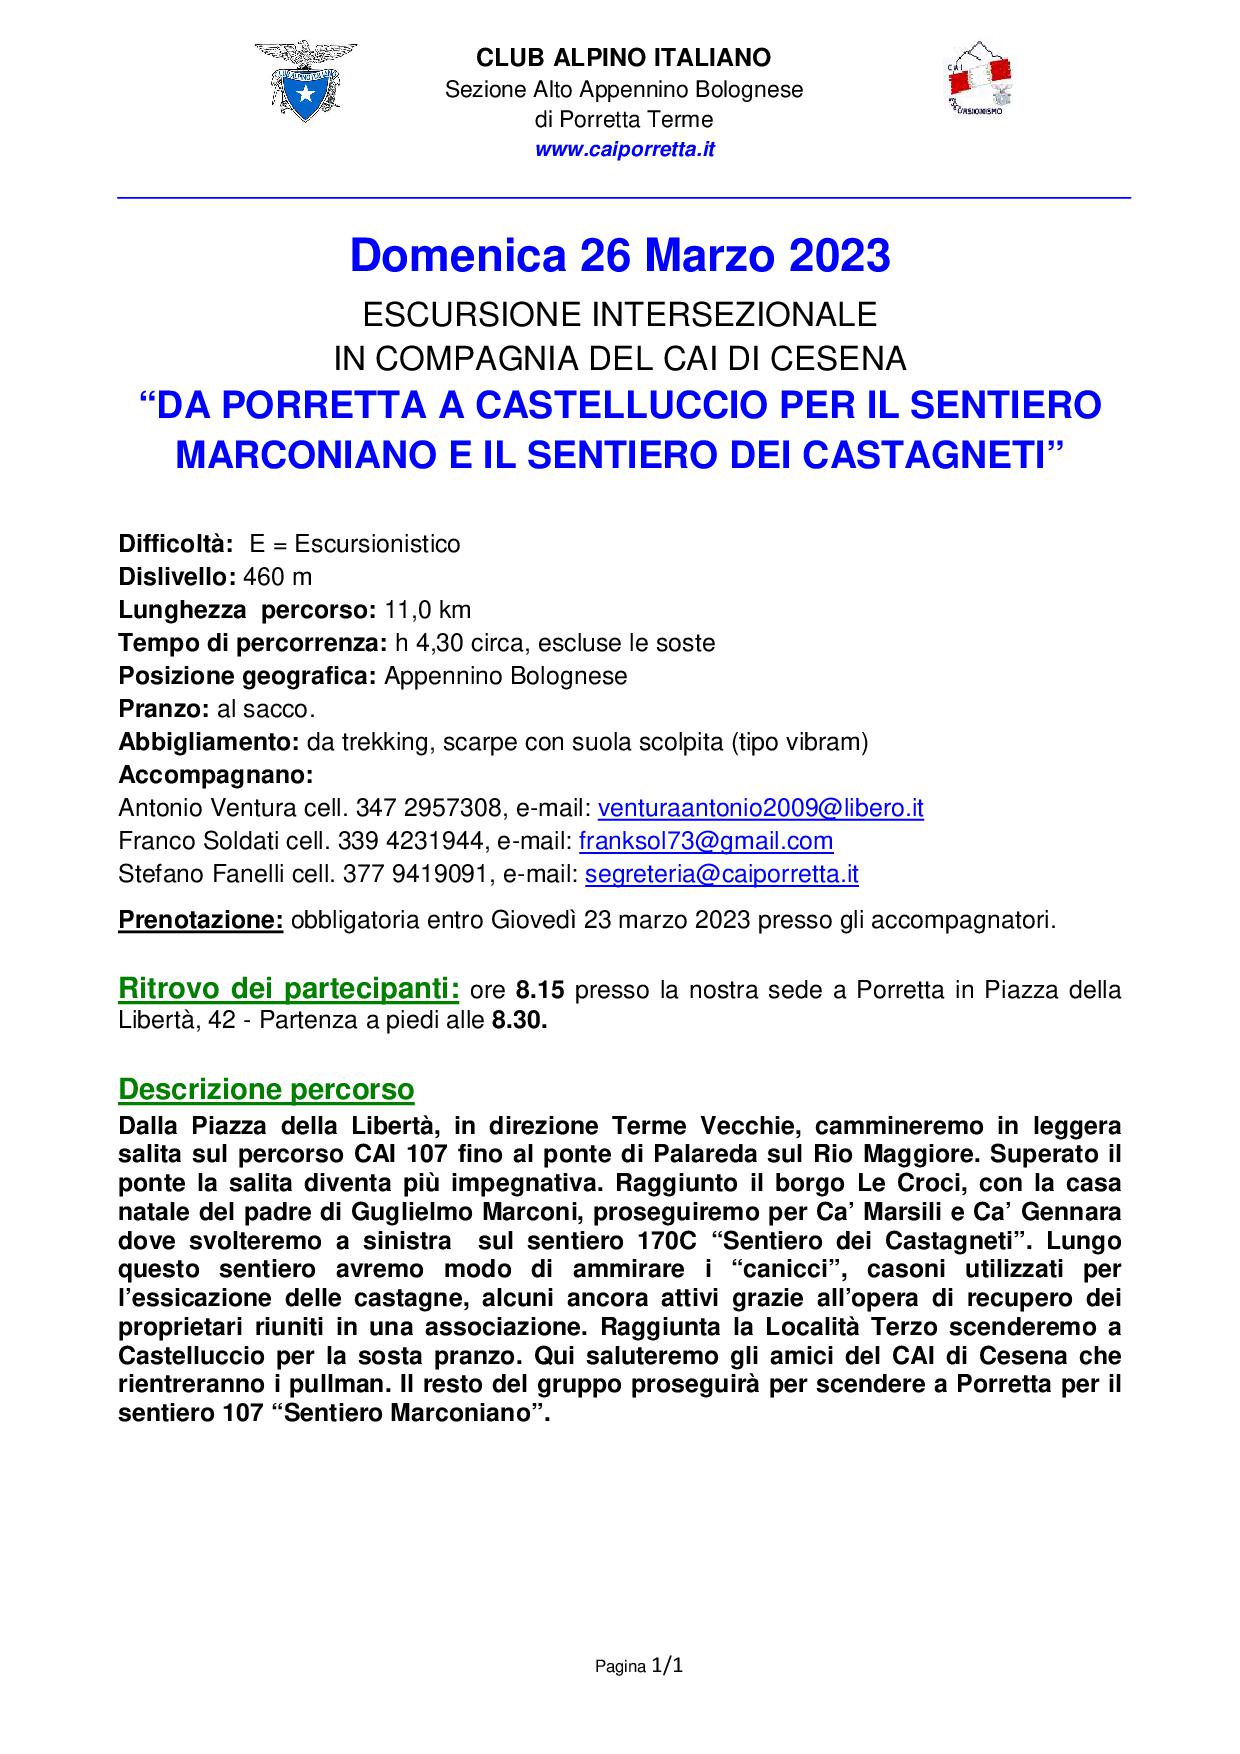 Domenica 26 marzo 2023 da Porretta Castelluccio con il CAI Cesena